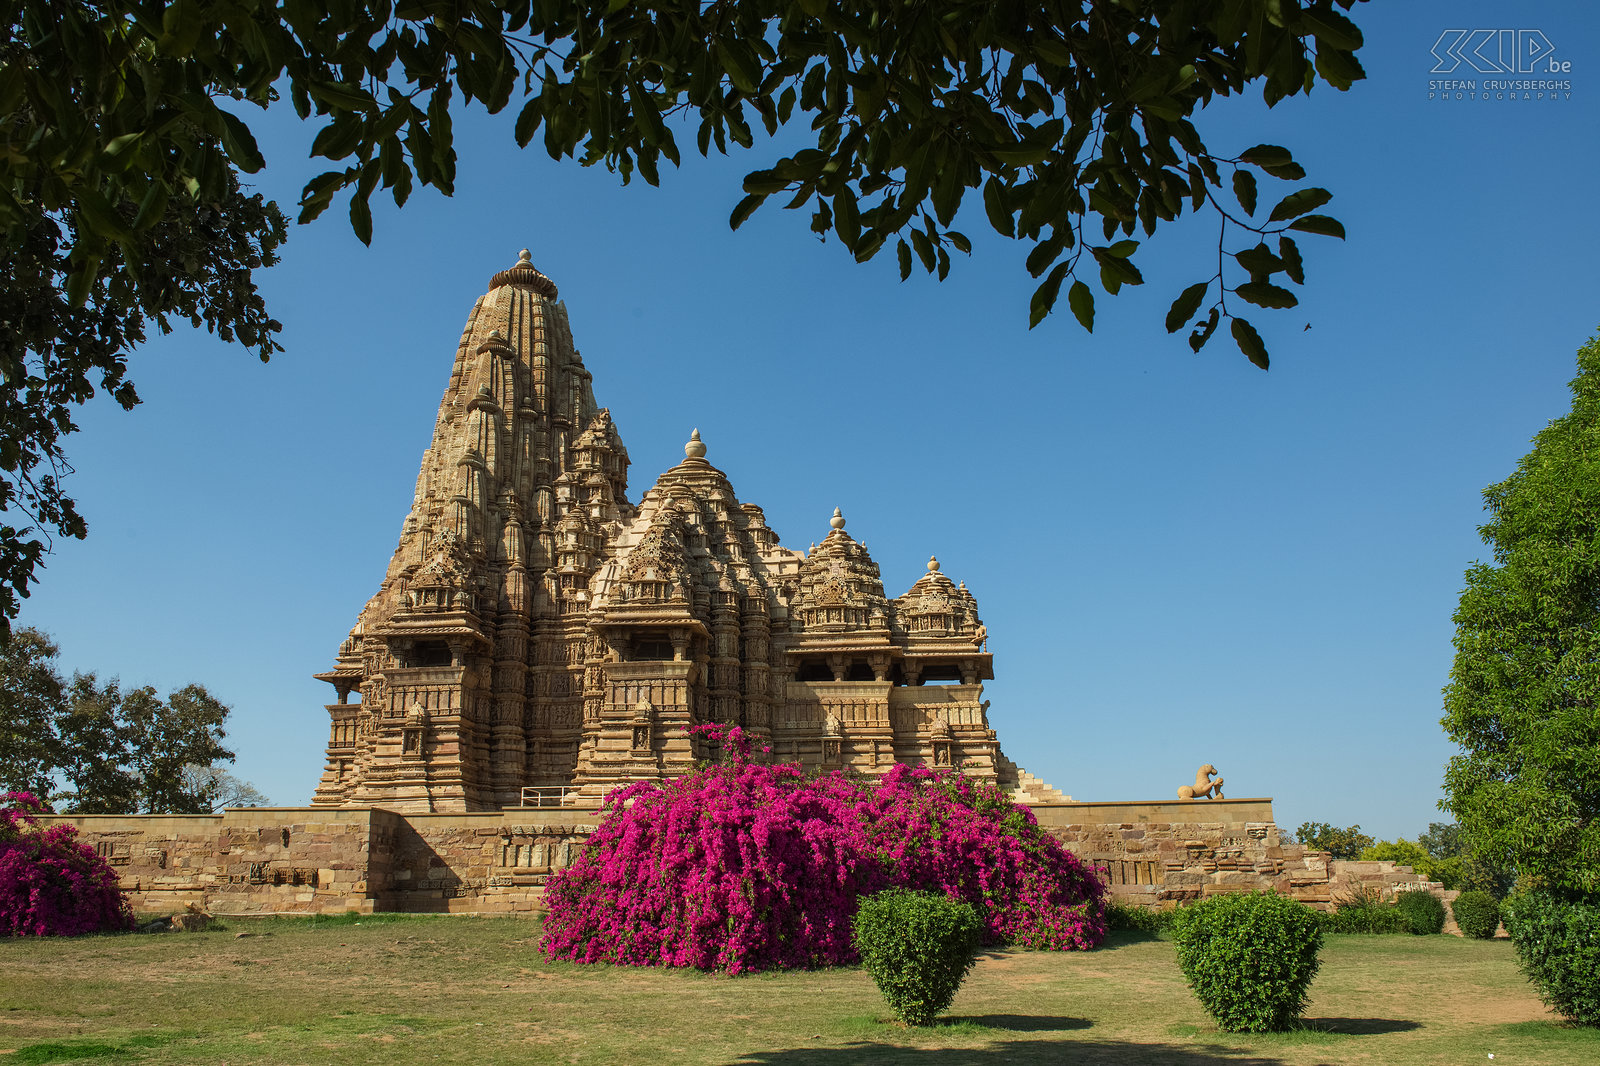 Khajuraho - Kandariya-Mahadev tempel De stad Khajuraho ligt in de deelstaat Madhya Pradesh. Khajuraho is vooral bekend geworden wegens de vele tempels met erotische afbeeldingen en beeldhouwwerken. Khajuraho was destijds de hoofdstad van het Chandellarijk en de tempels staan nu op de Werelderfgoedlijst van UNESCO.  Stefan Cruysberghs